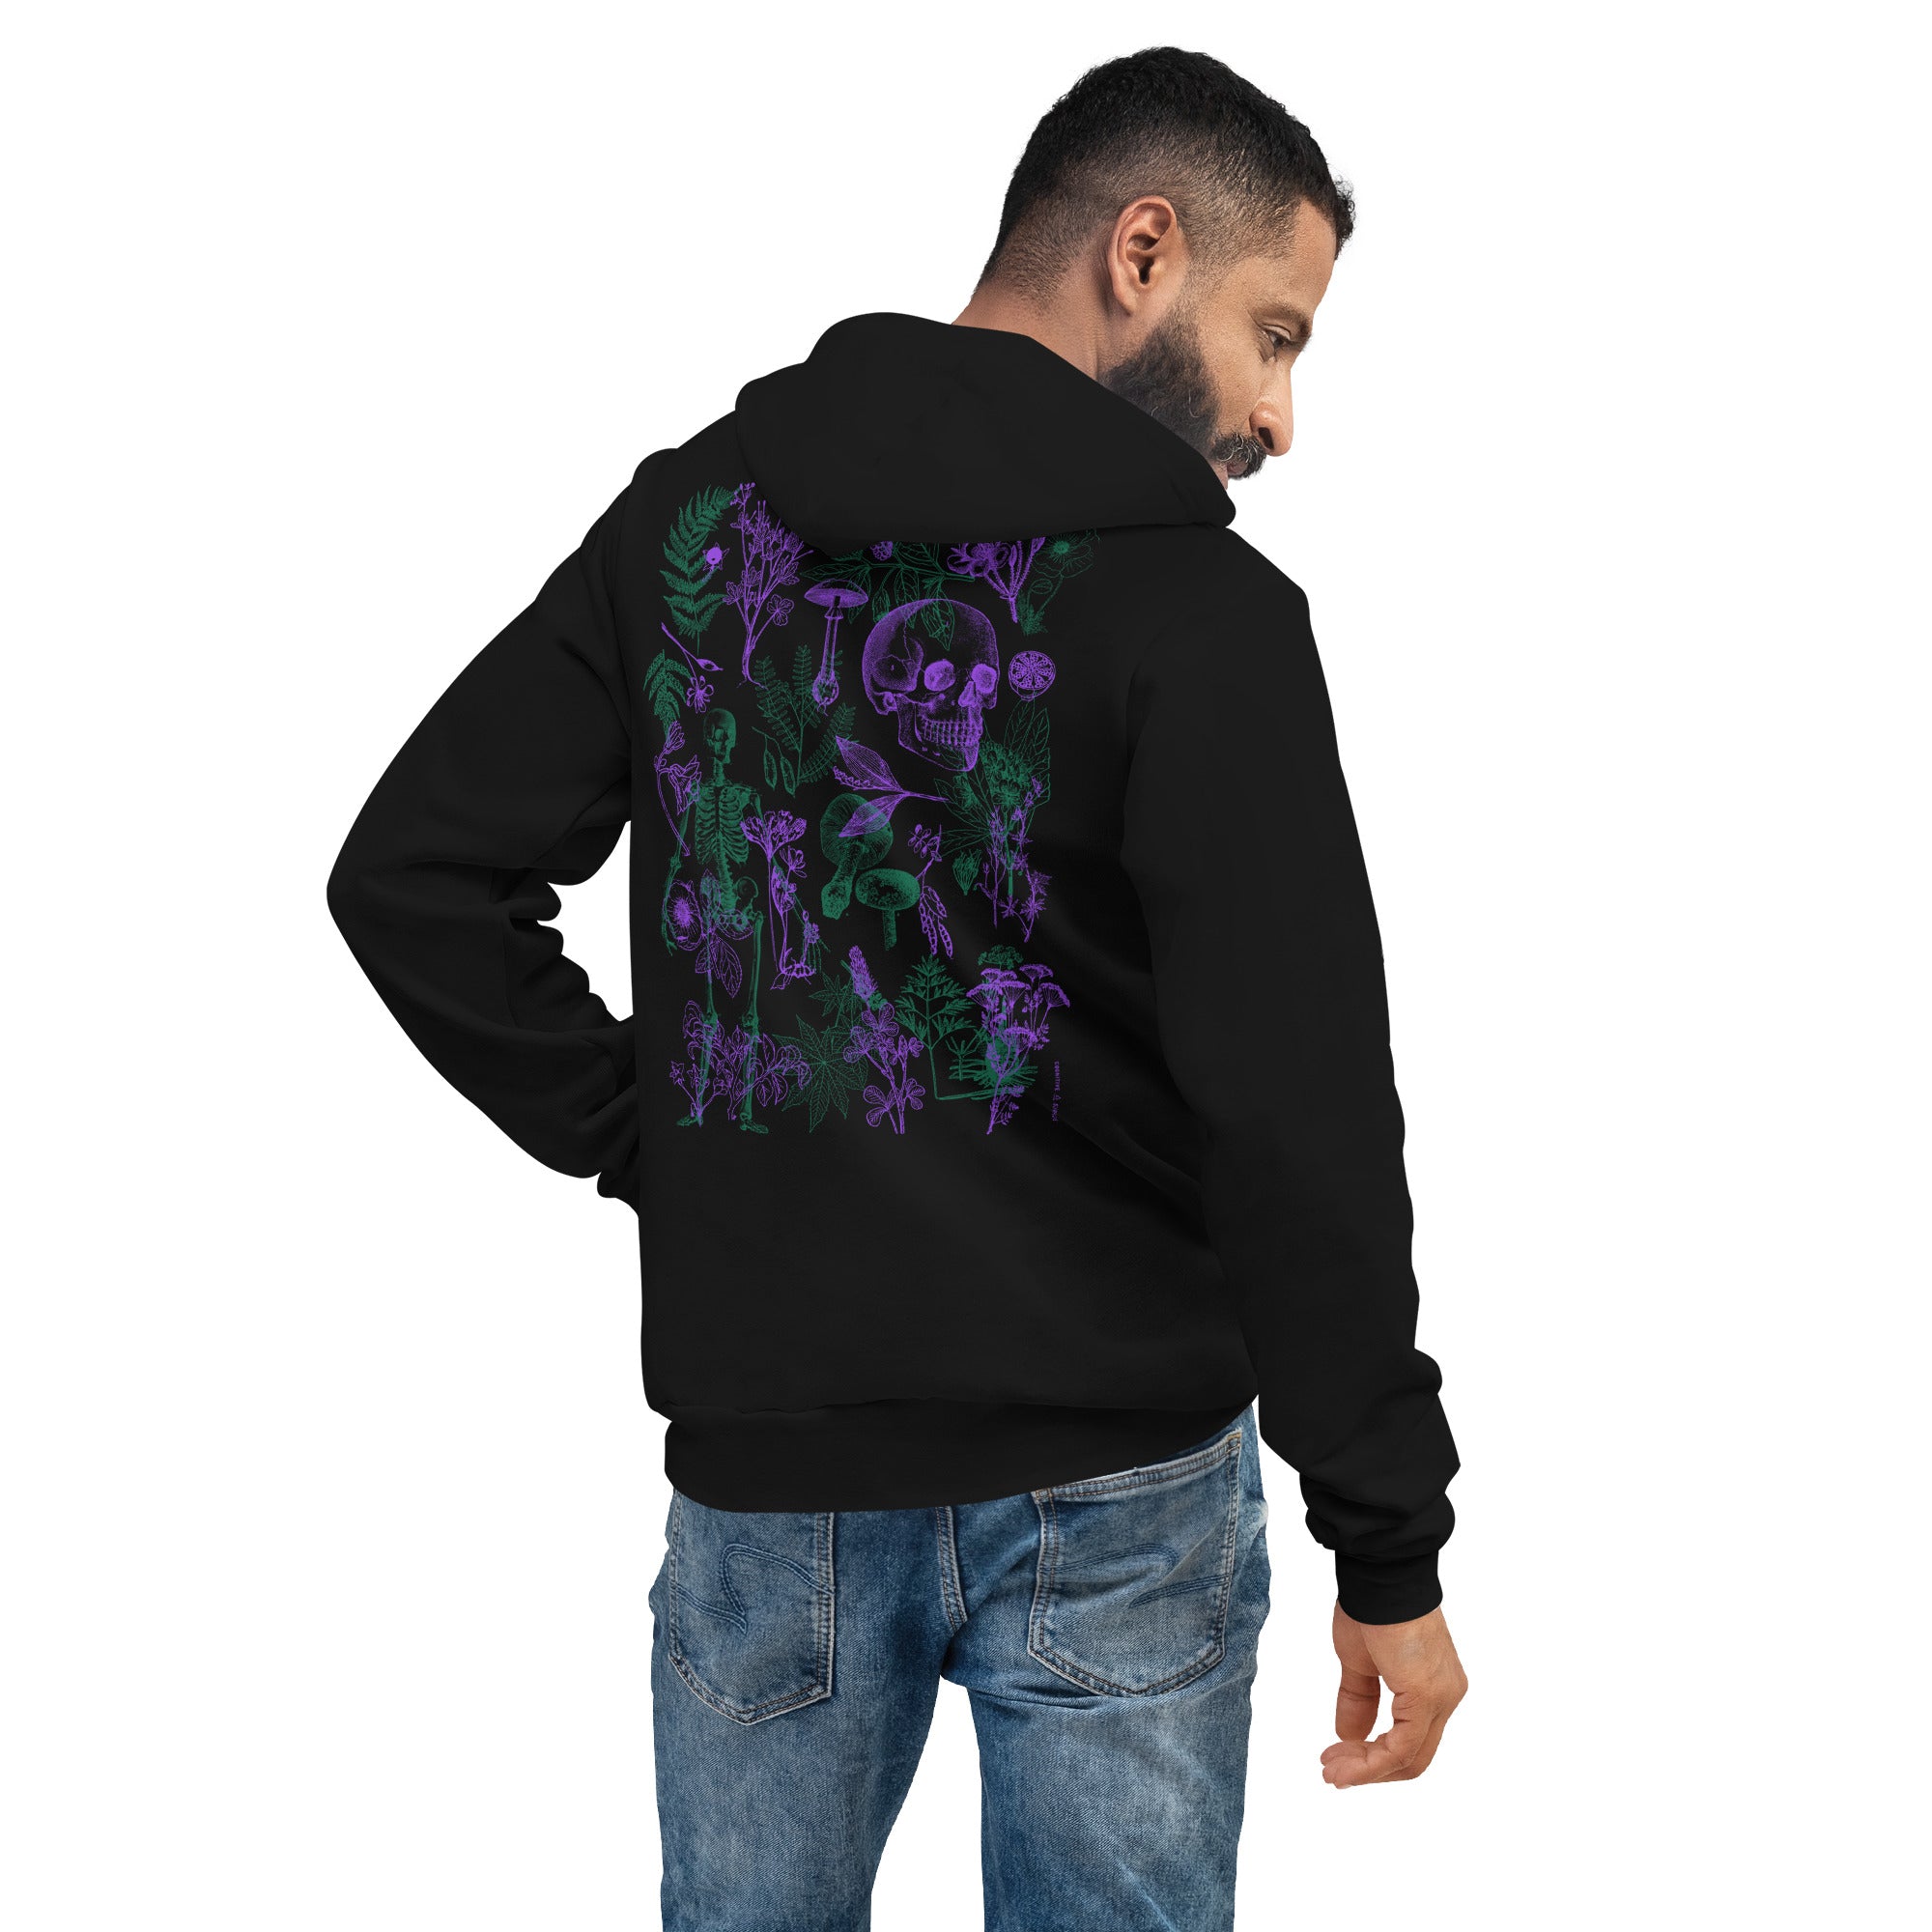 unisex-pullover-hoodie-black-back-656e650654b34.jpg